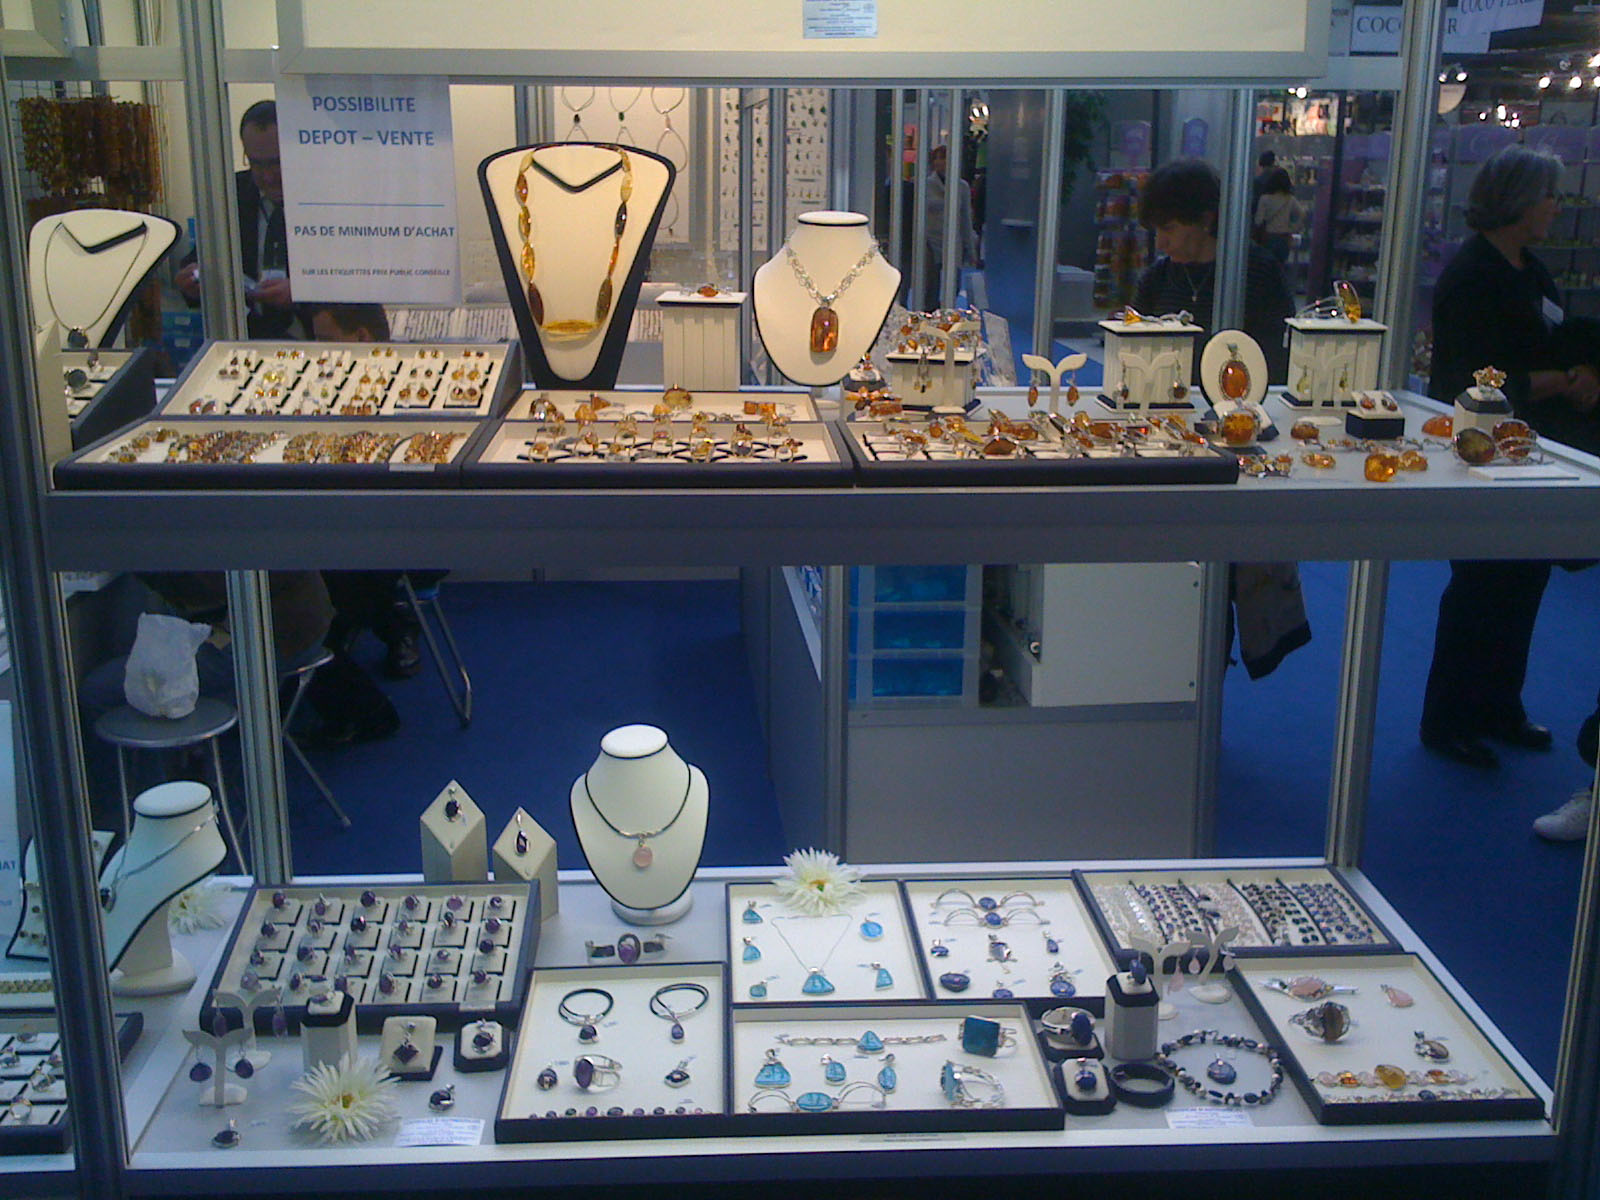 Bijorhca in Paris. Jewelry wholesaler 2013